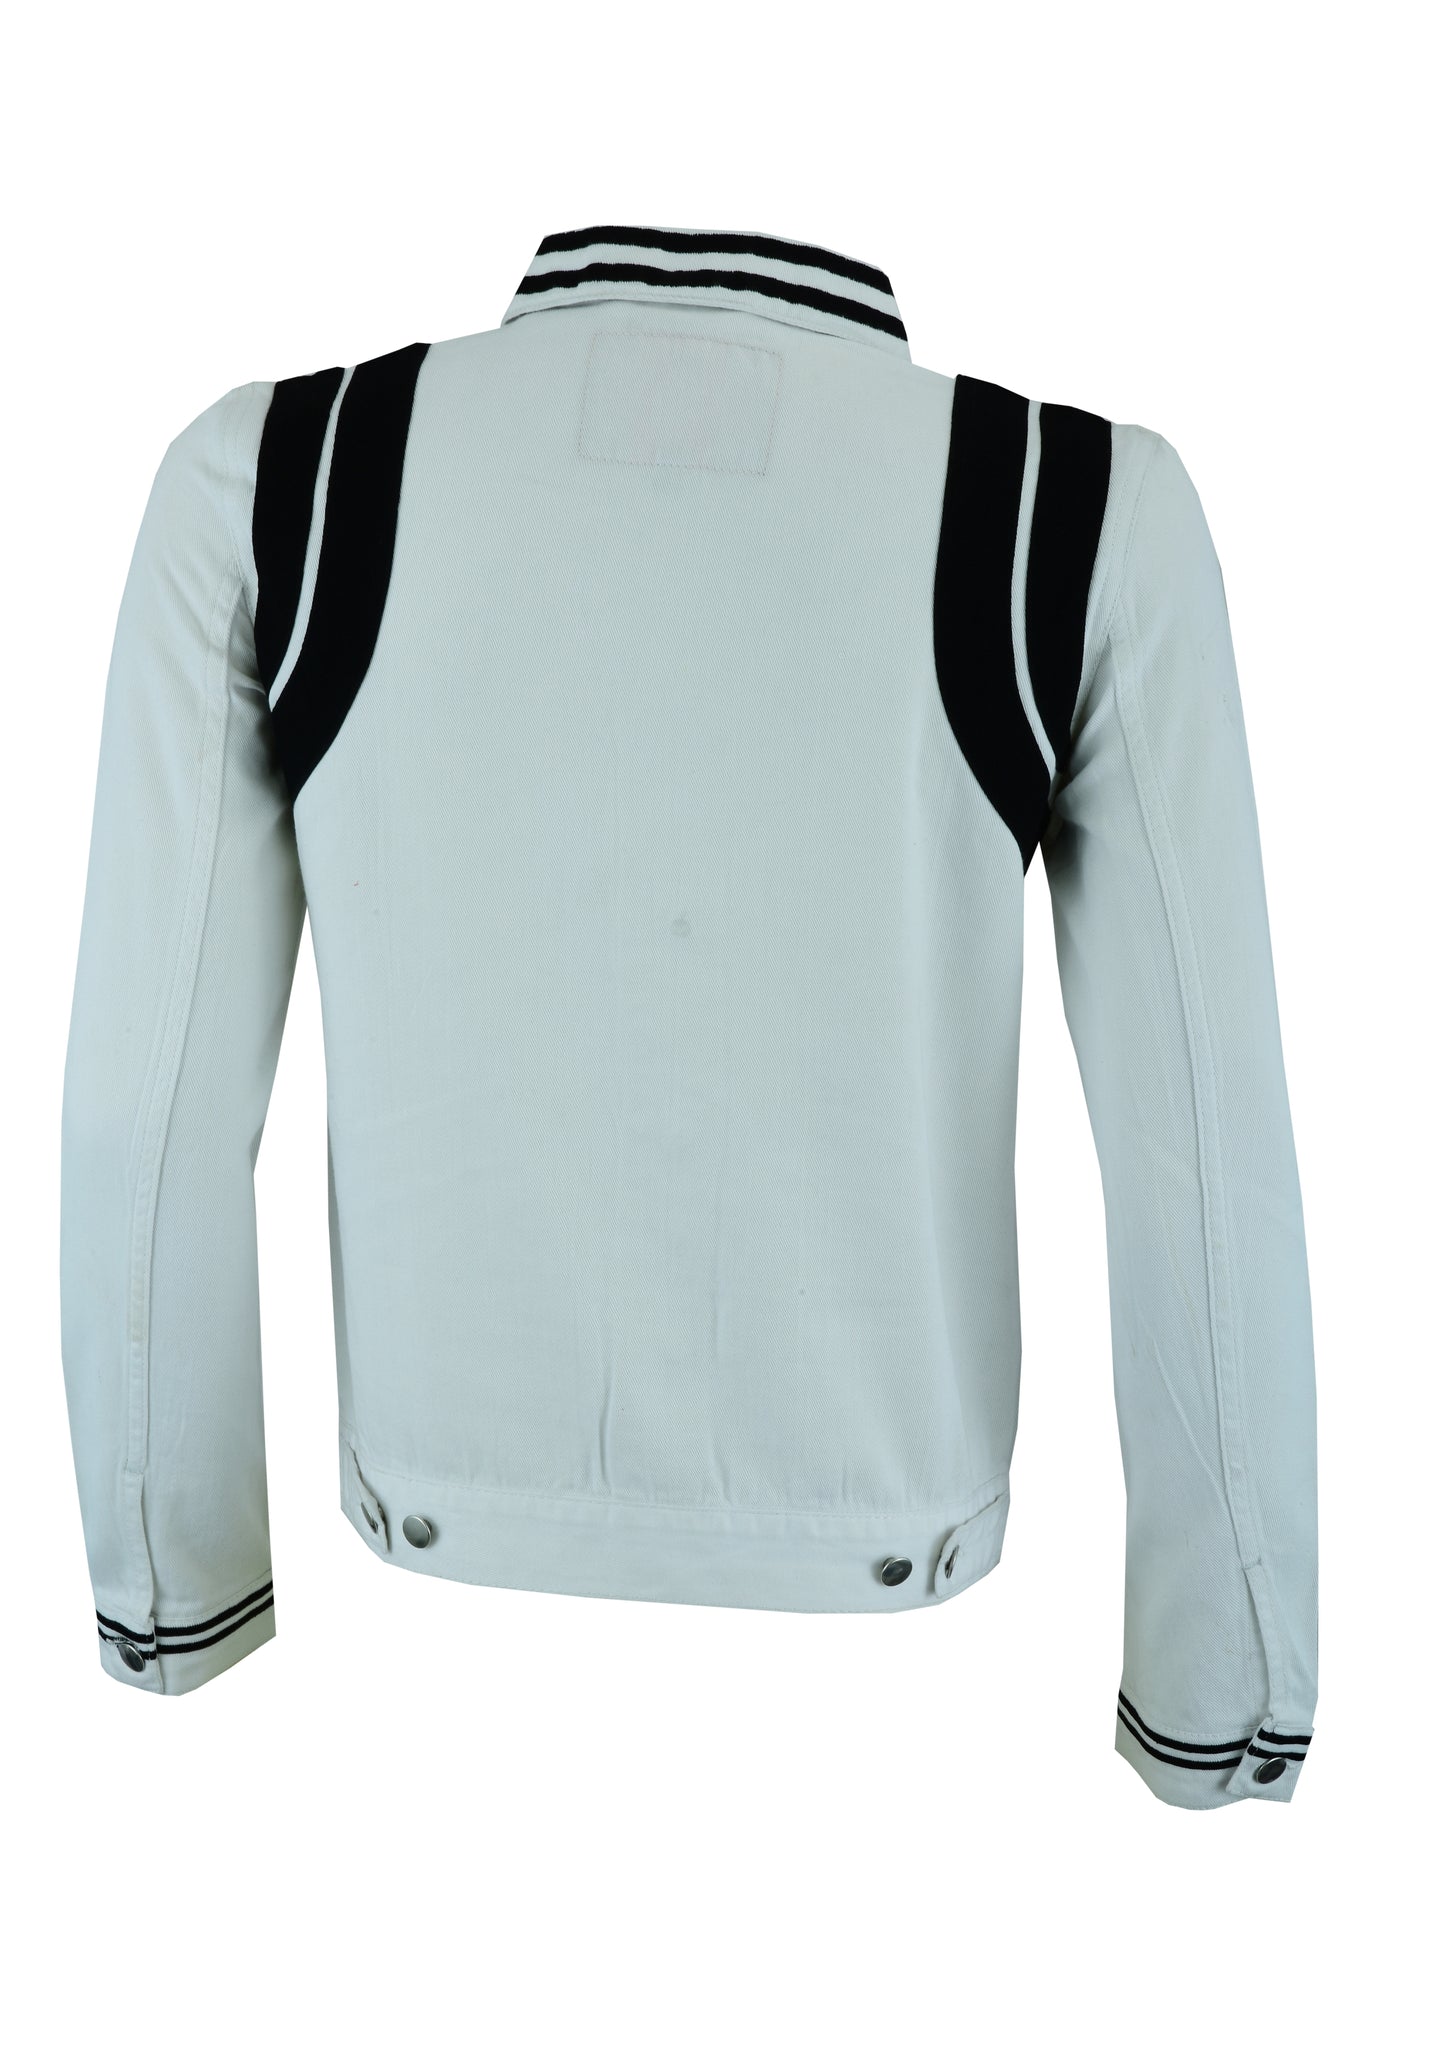 KS106 White & Black Denim Jackets Hip-hop Style  Kanvos Sports